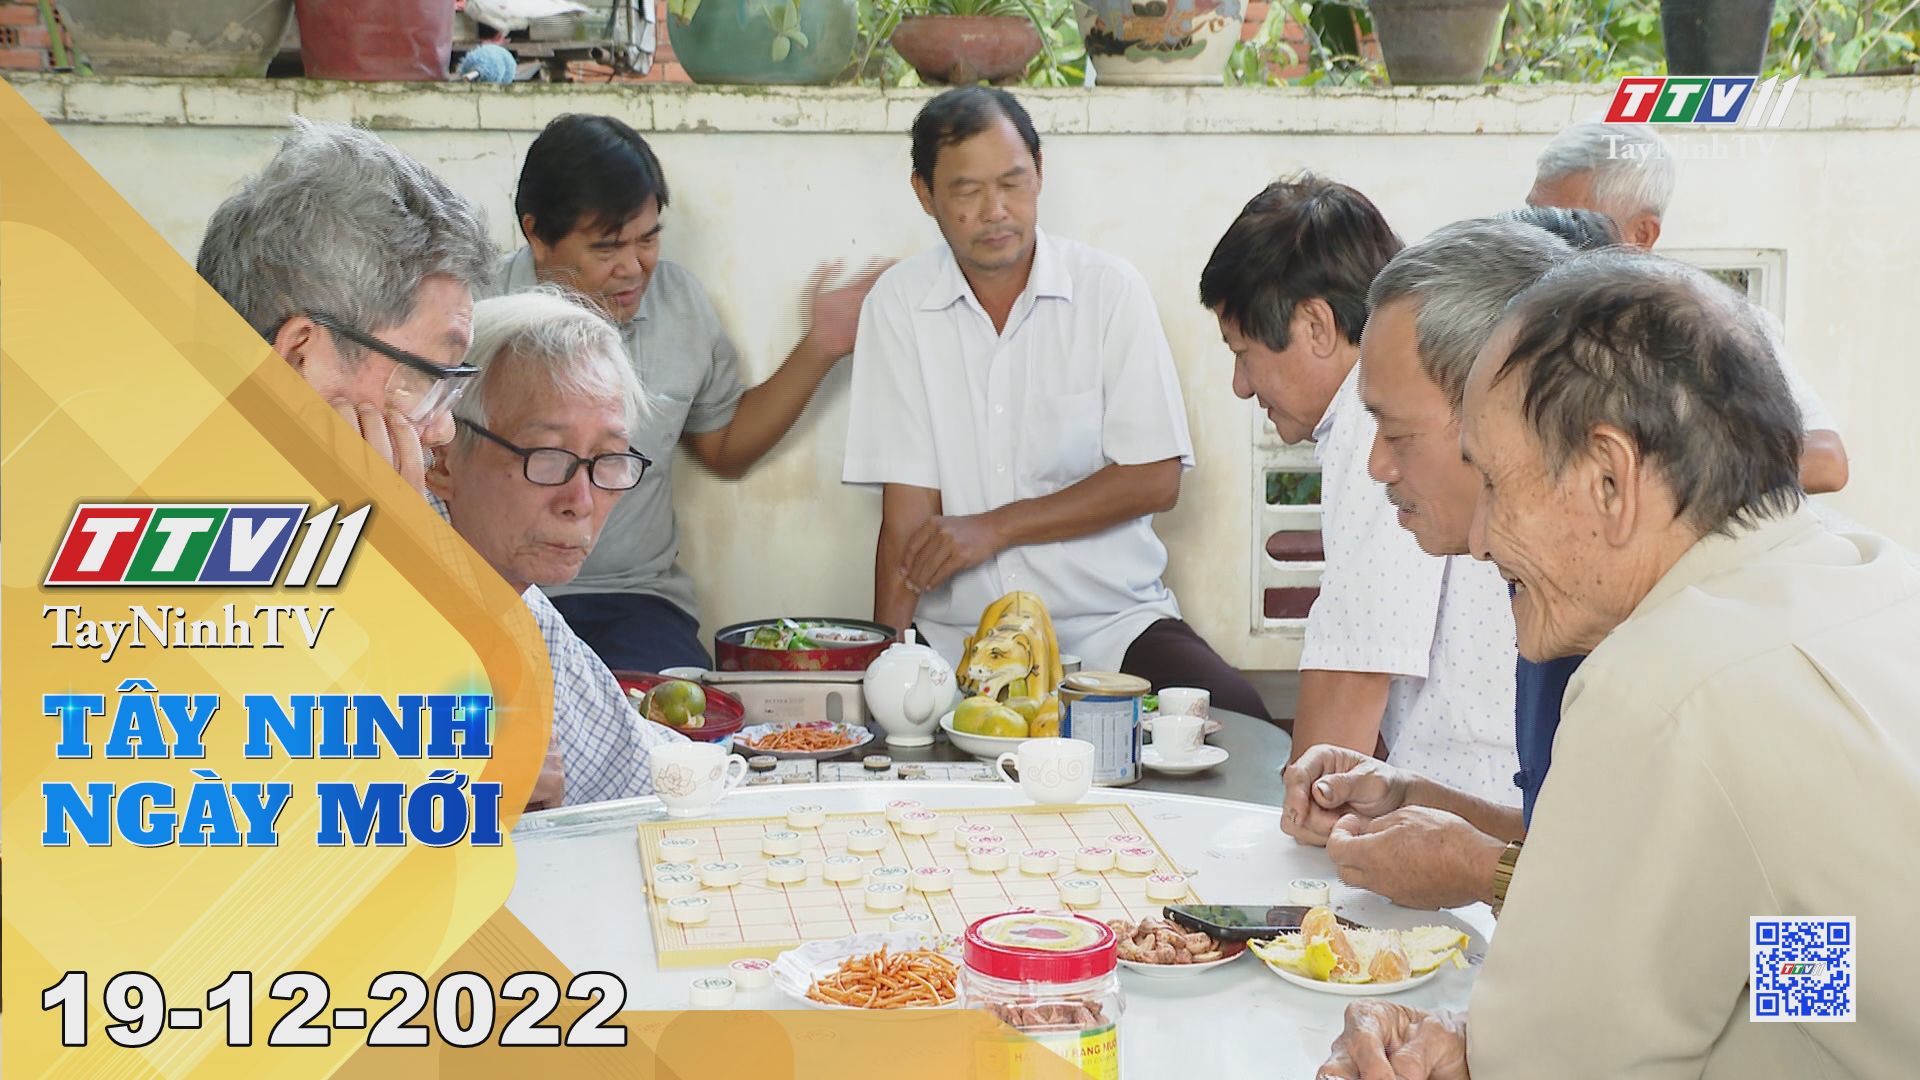 Tây Ninh ngày mới 19-12-2022 | Tin tức hôm nay | TayNinhTV